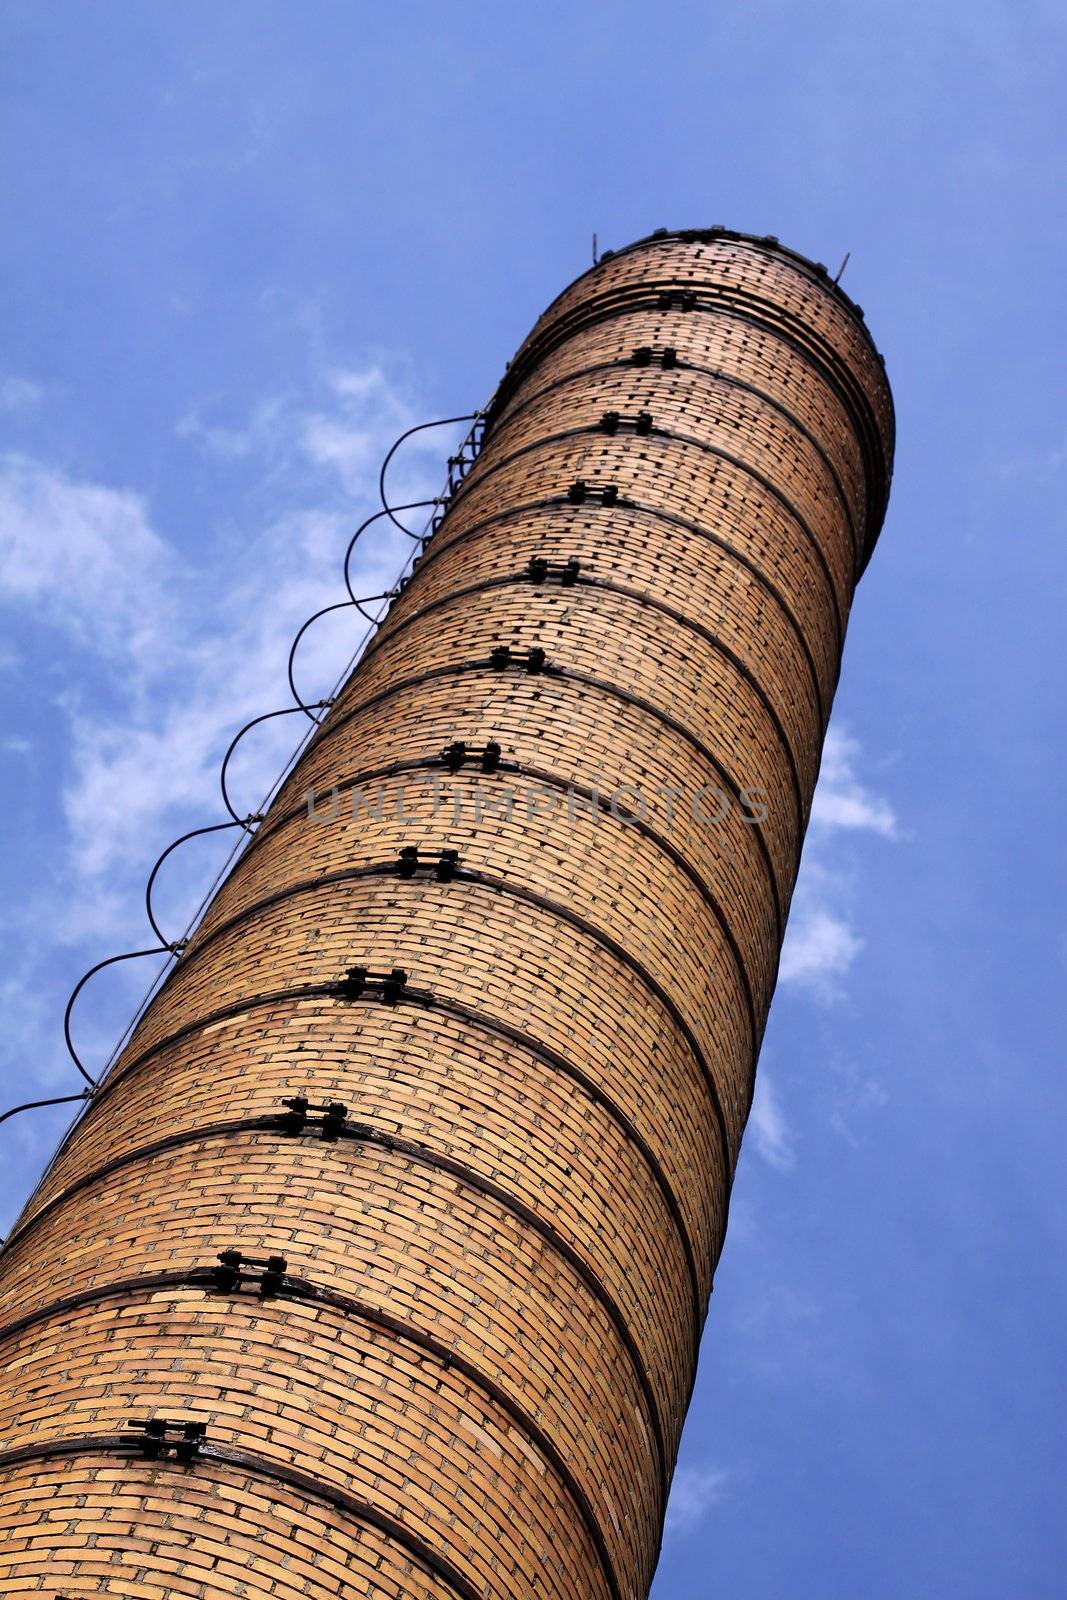 The brick chimney by Gbuglok